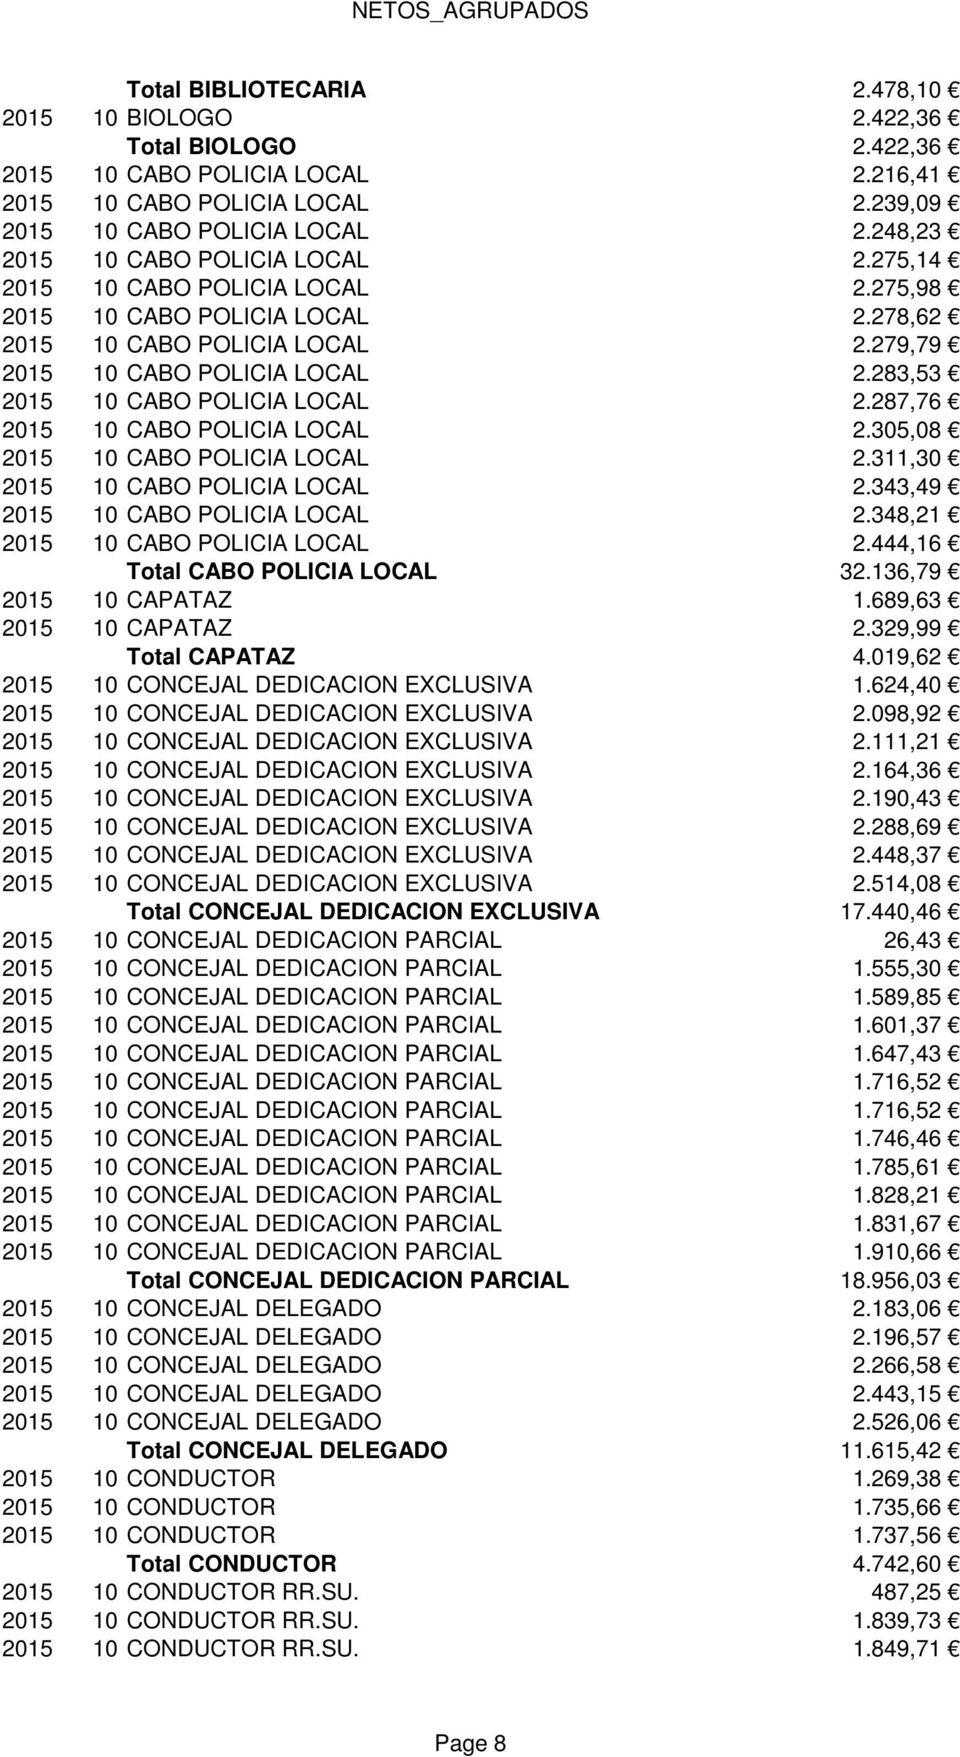 283,53 2015 10 CABO POLICIA LOCAL 2.287,76 2015 10 CABO POLICIA LOCAL 2.305,08 2015 10 CABO POLICIA LOCAL 2.311,30 2015 10 CABO POLICIA LOCAL 2.343,49 2015 10 CABO POLICIA LOCAL 2.